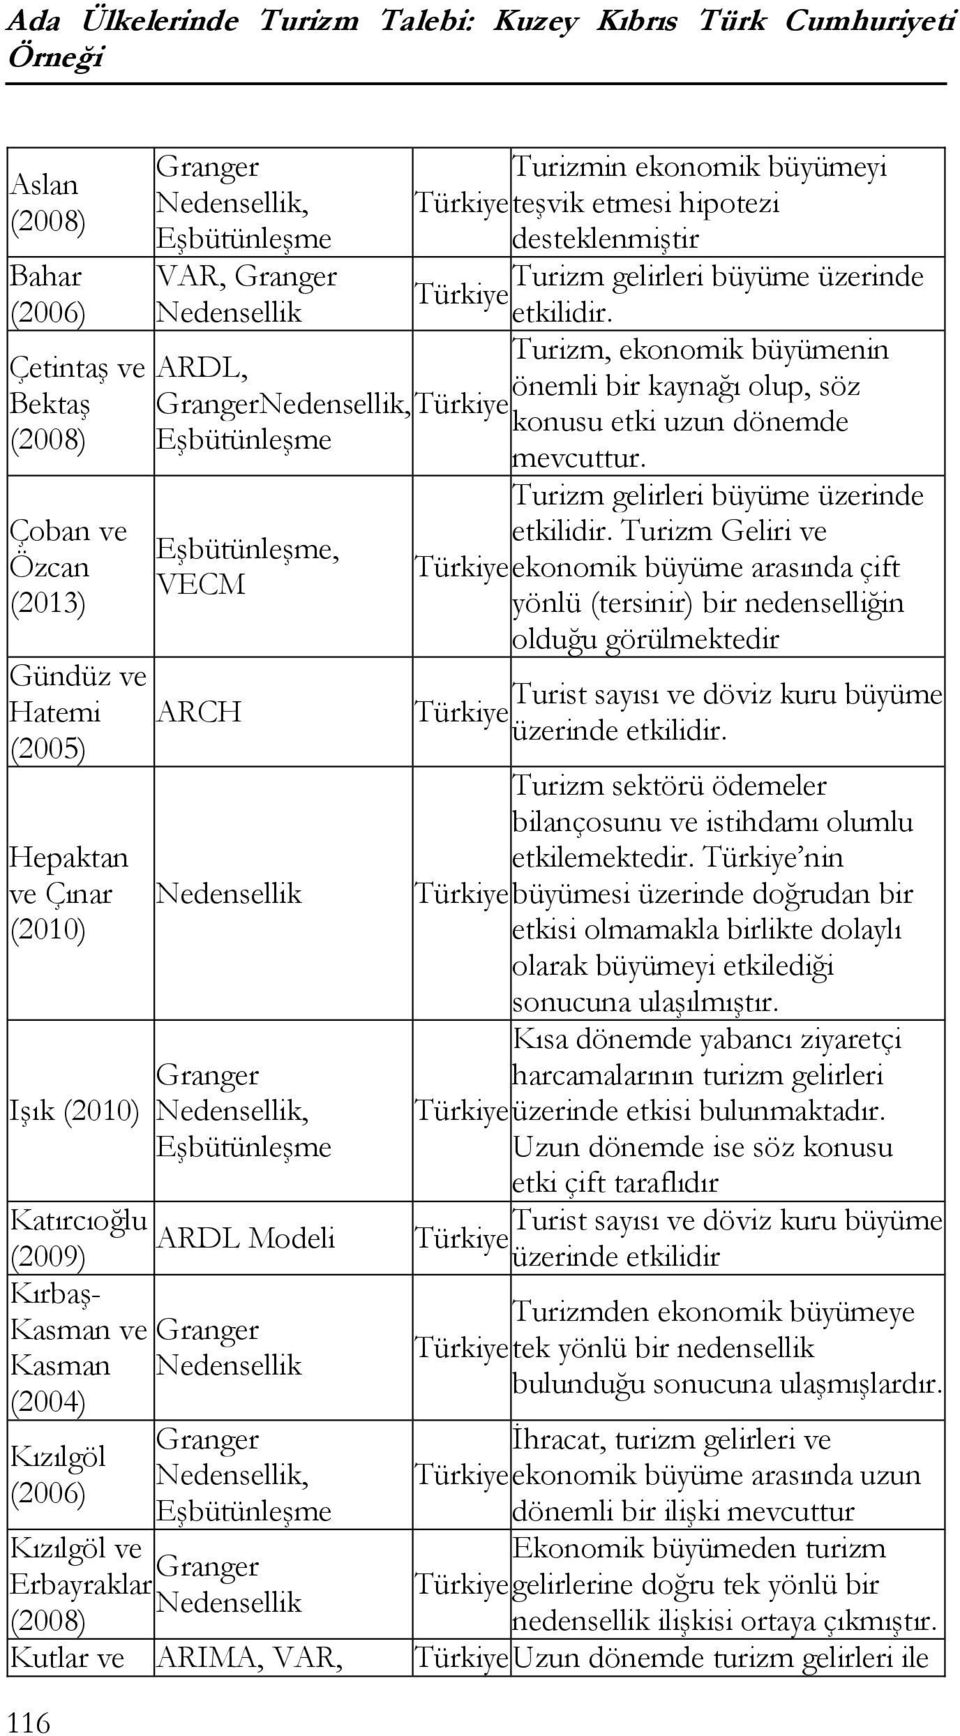 Granger, Eşbüünleşme Kızılgöl ve Granger Erbayraklar (2008) Kular ve ARIMA, VAR, Turizmin ekonomik büyümeyi Türkiye eşvik emesi hipoezi deseklenmişir Turizm gelirleri büyüme üzerinde Türkiye ekilidir.